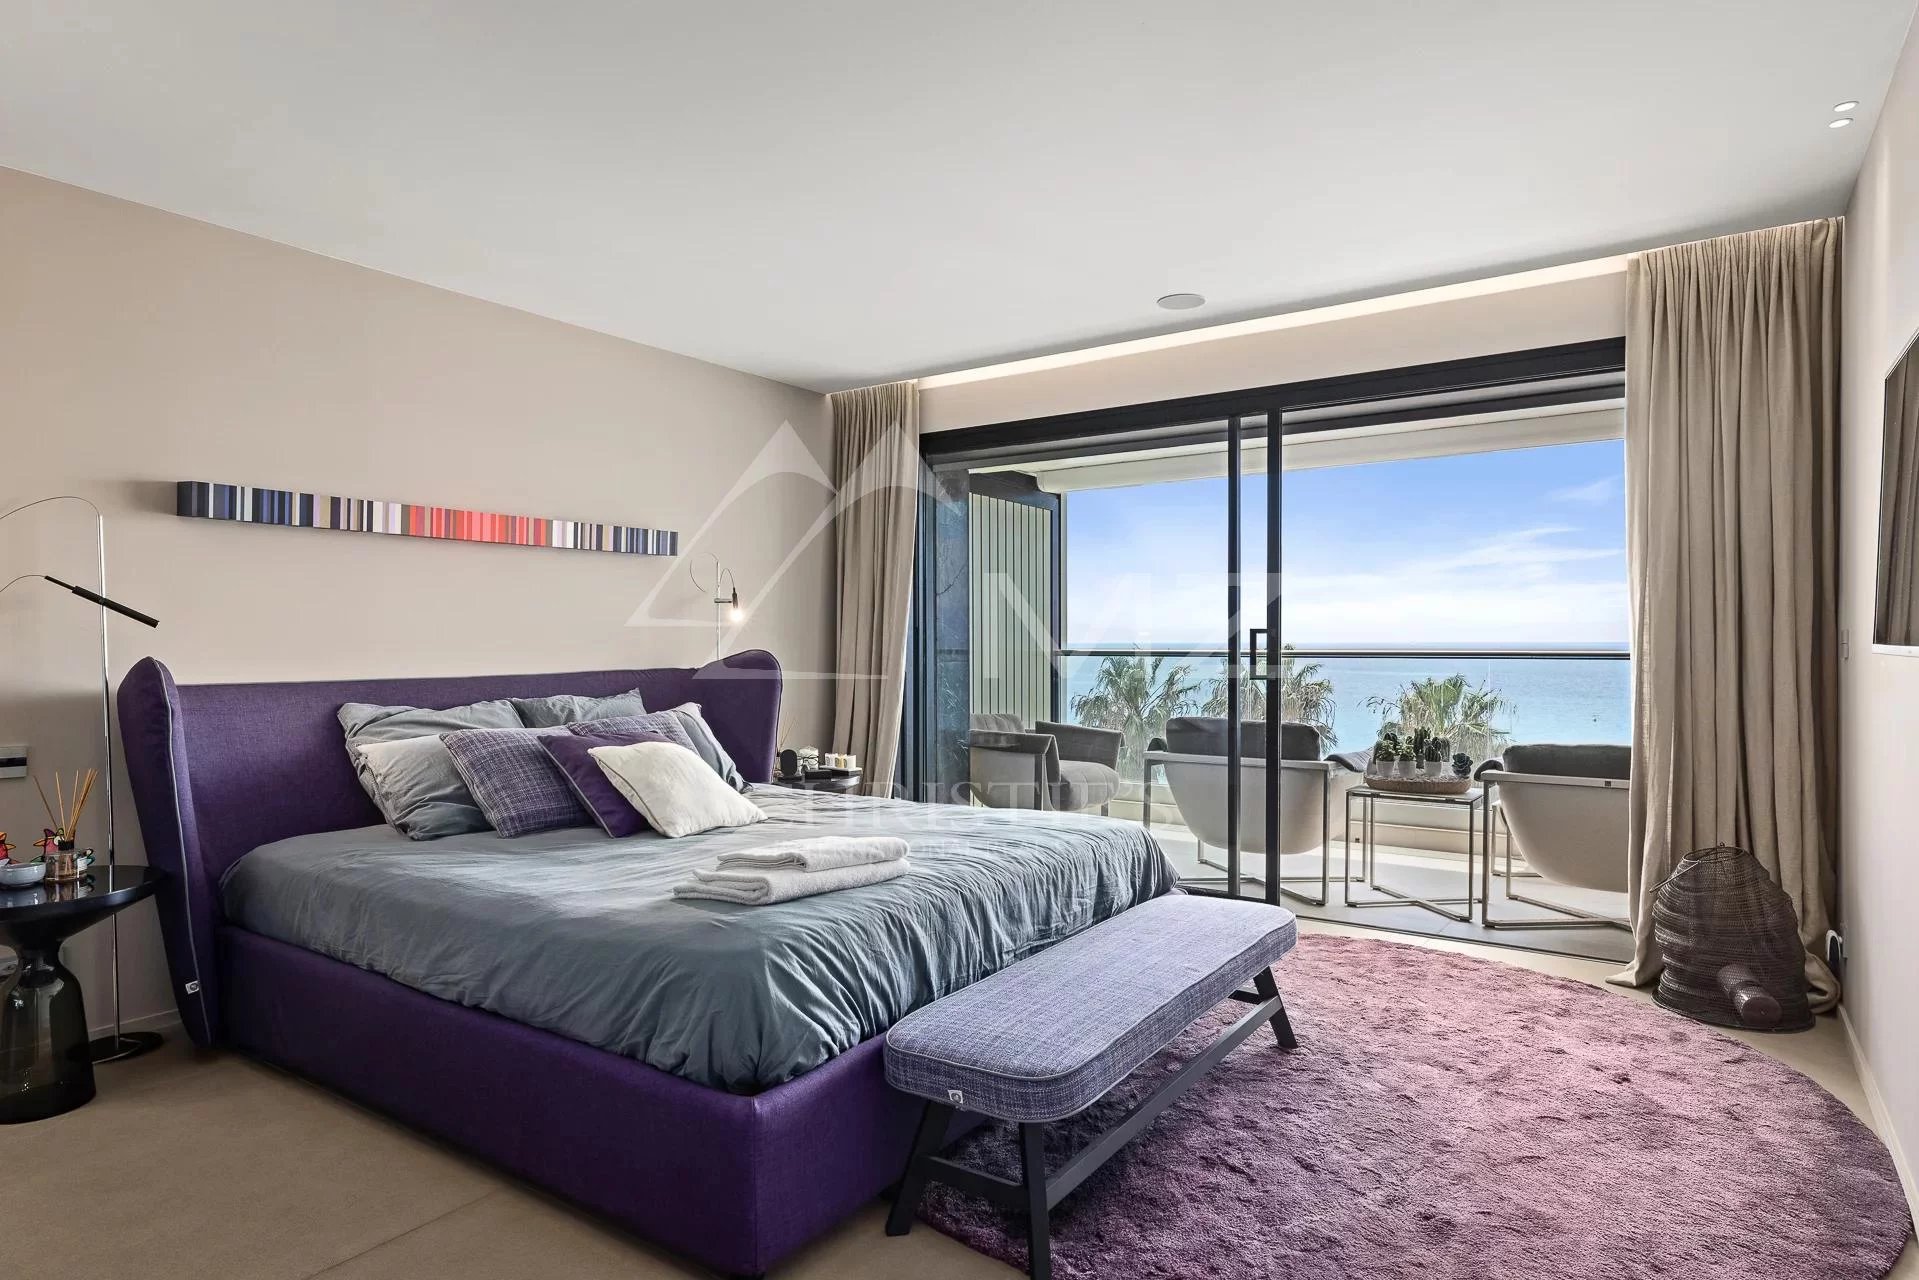 Cannes - Croisette - Appartement avec vue mer